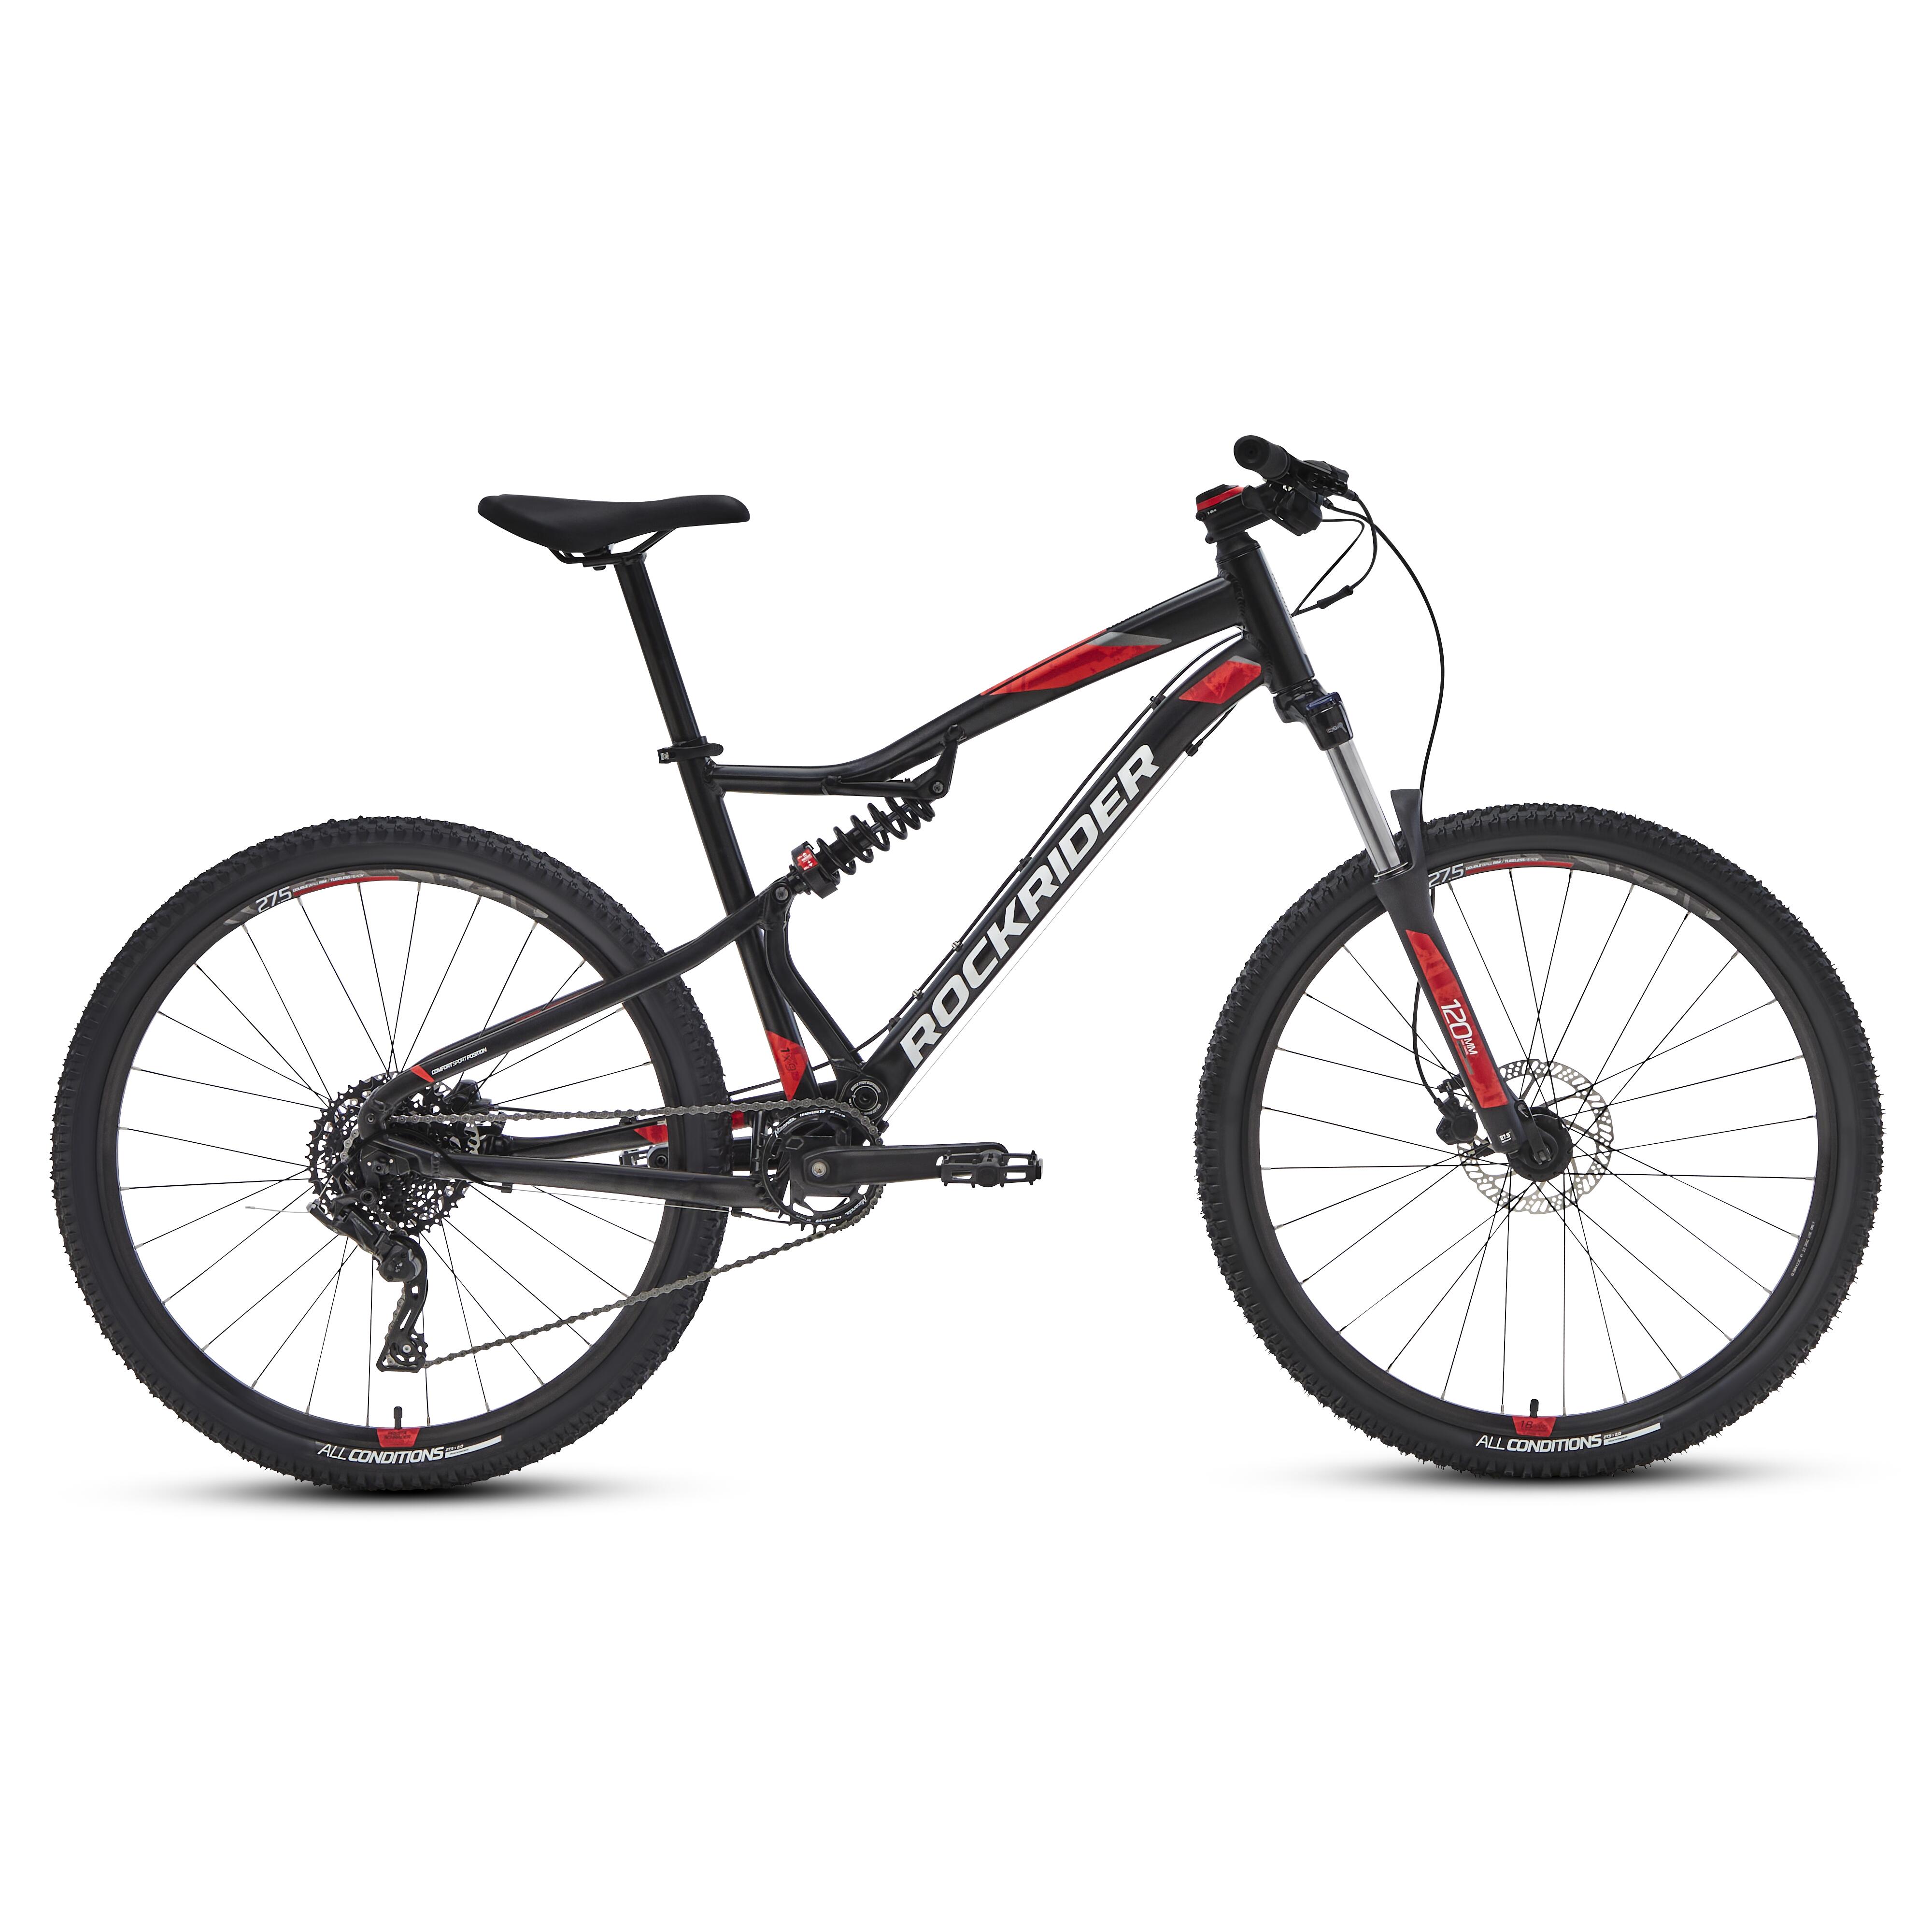 Bicicletă MTB ST 530 S 27,5″ Negru-Roșu 275"- imagine 2022